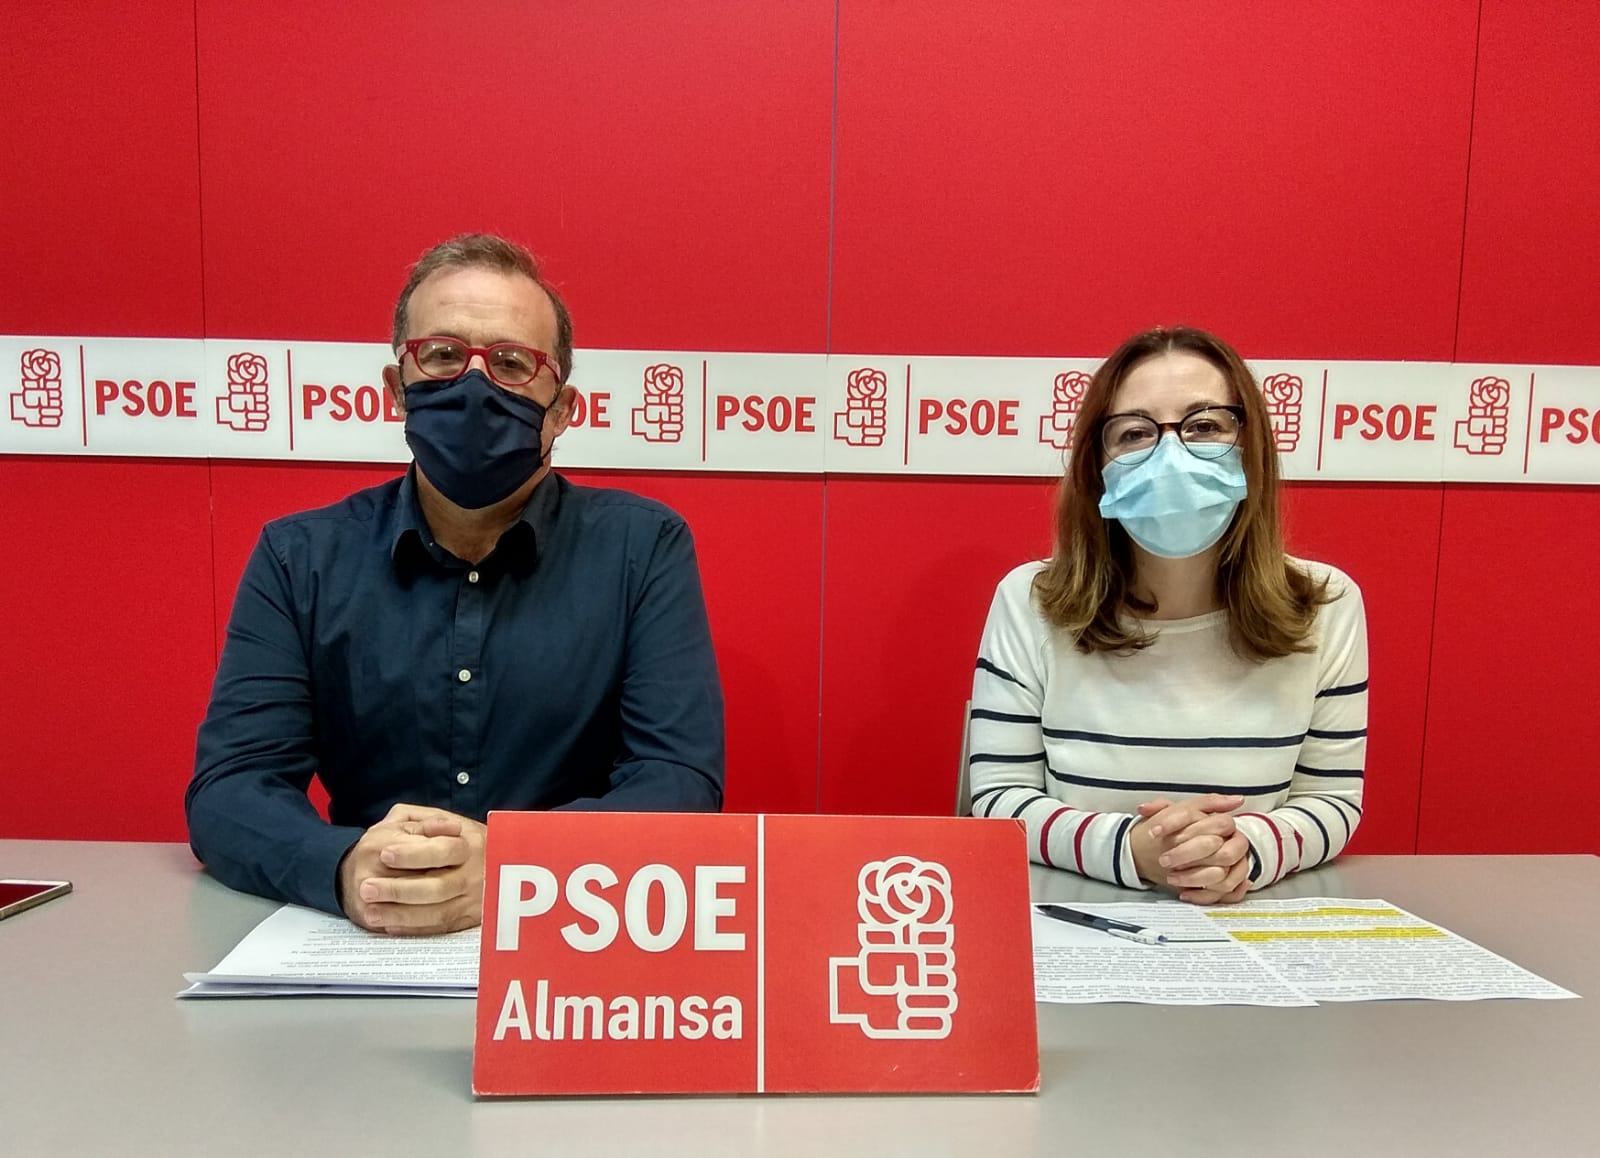 PSOE Almansa Pablo Sánchez y Clara López